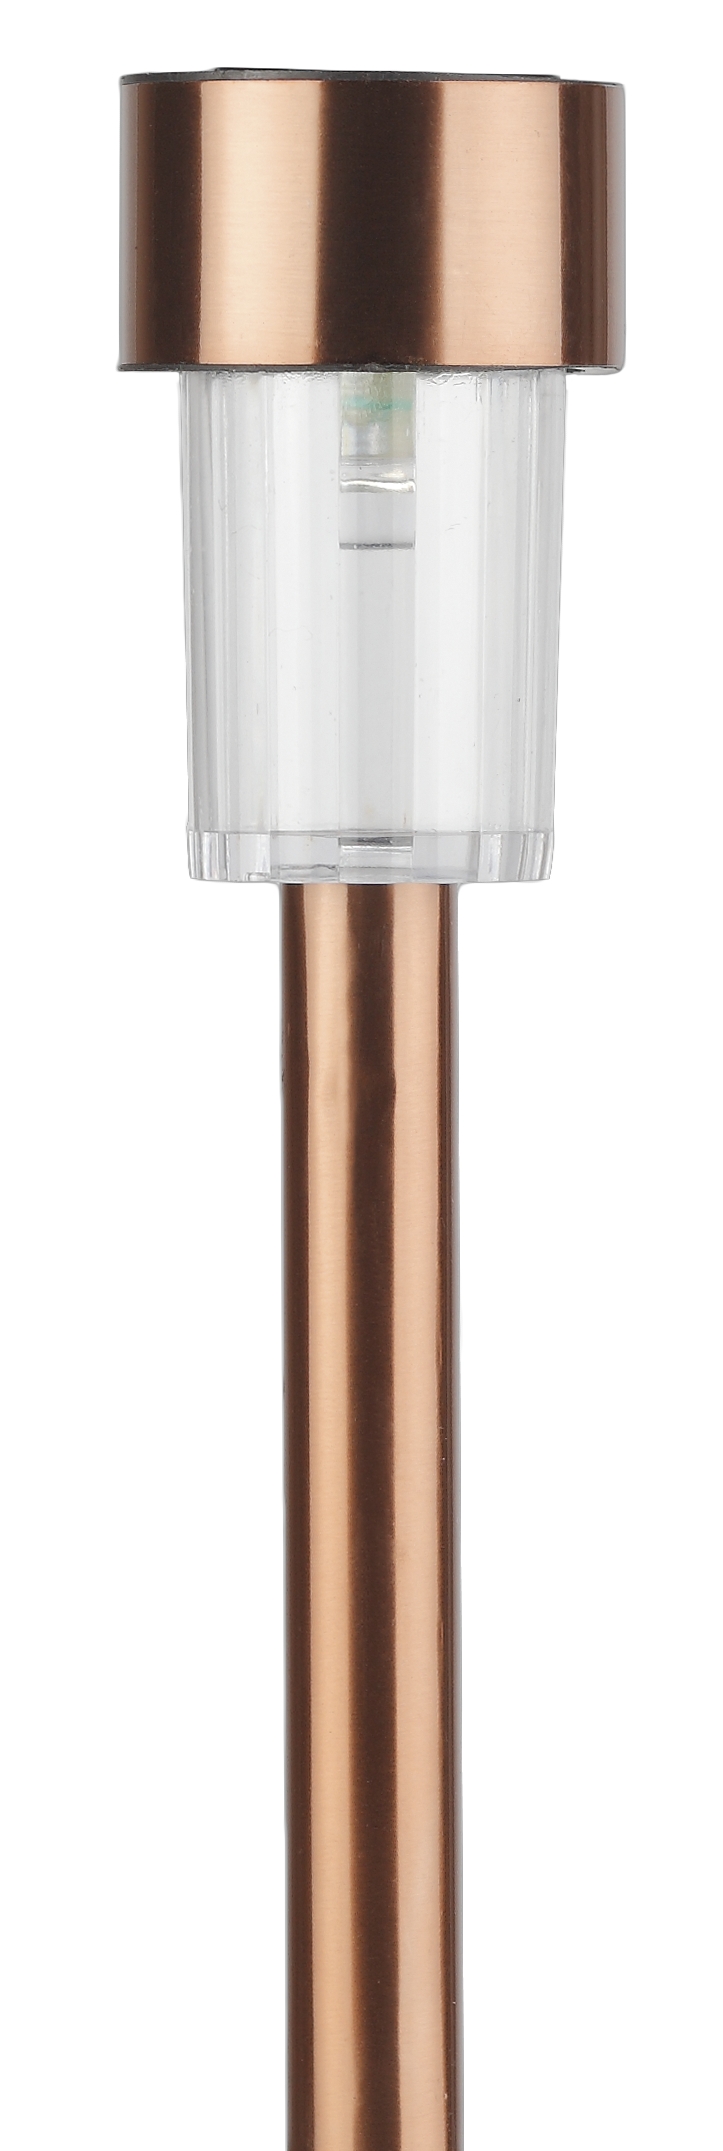 SL-SS30-CPR ЭРА Садовый светильник на солнечной батарее, нержавеющая сталь,  медный , 32 см (24/1320